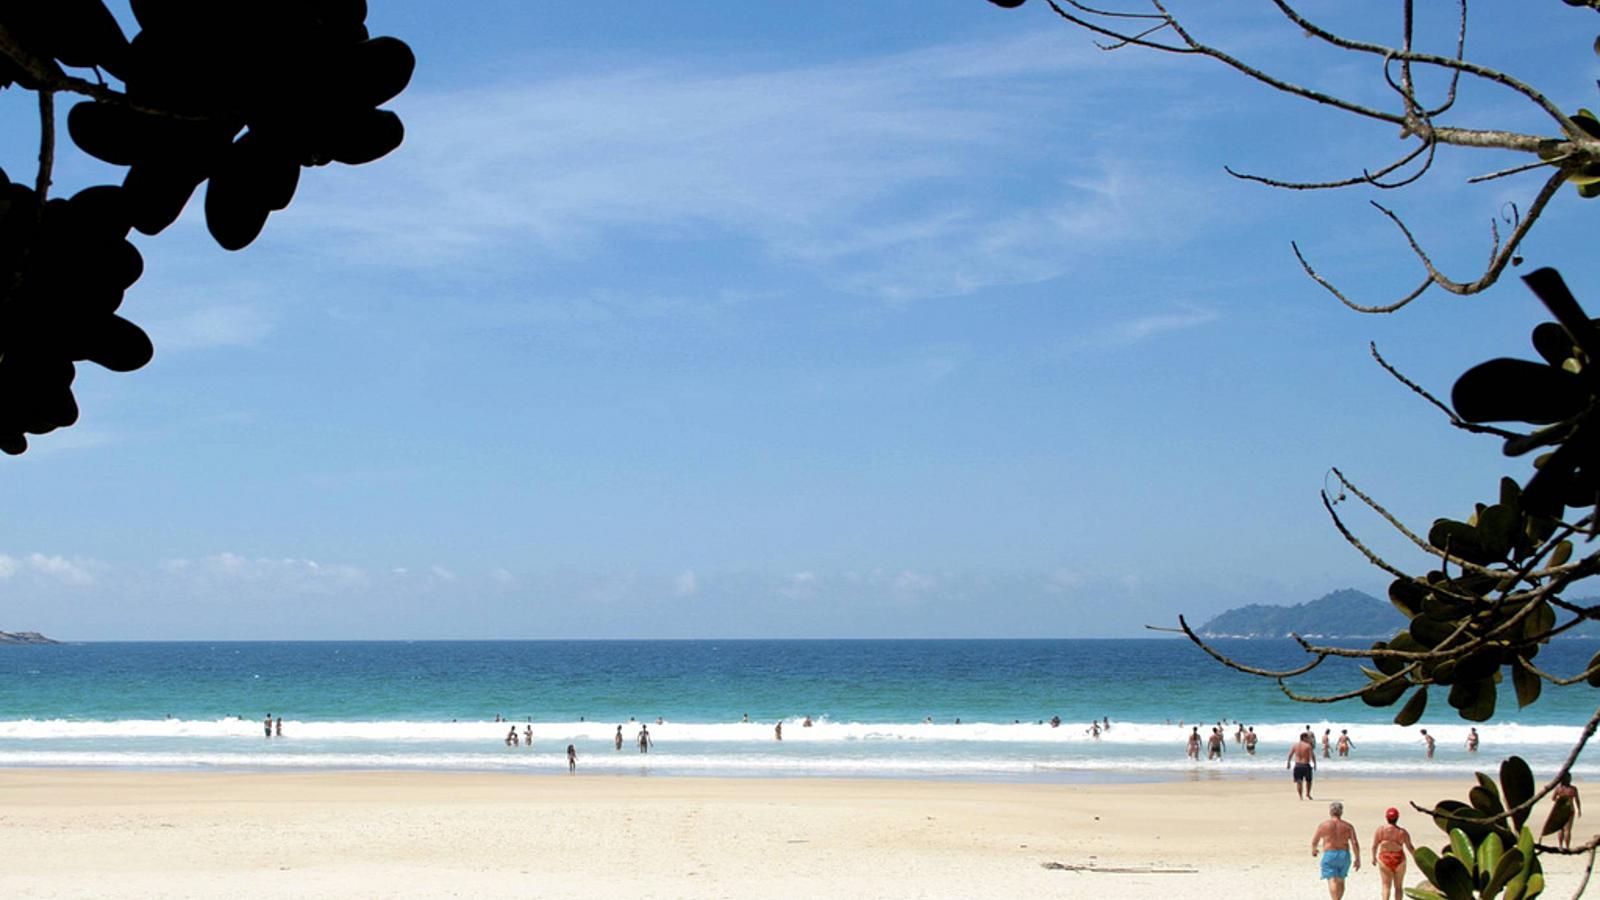 Migliori spiagge del mondo, le 10 più belle - immagine 6